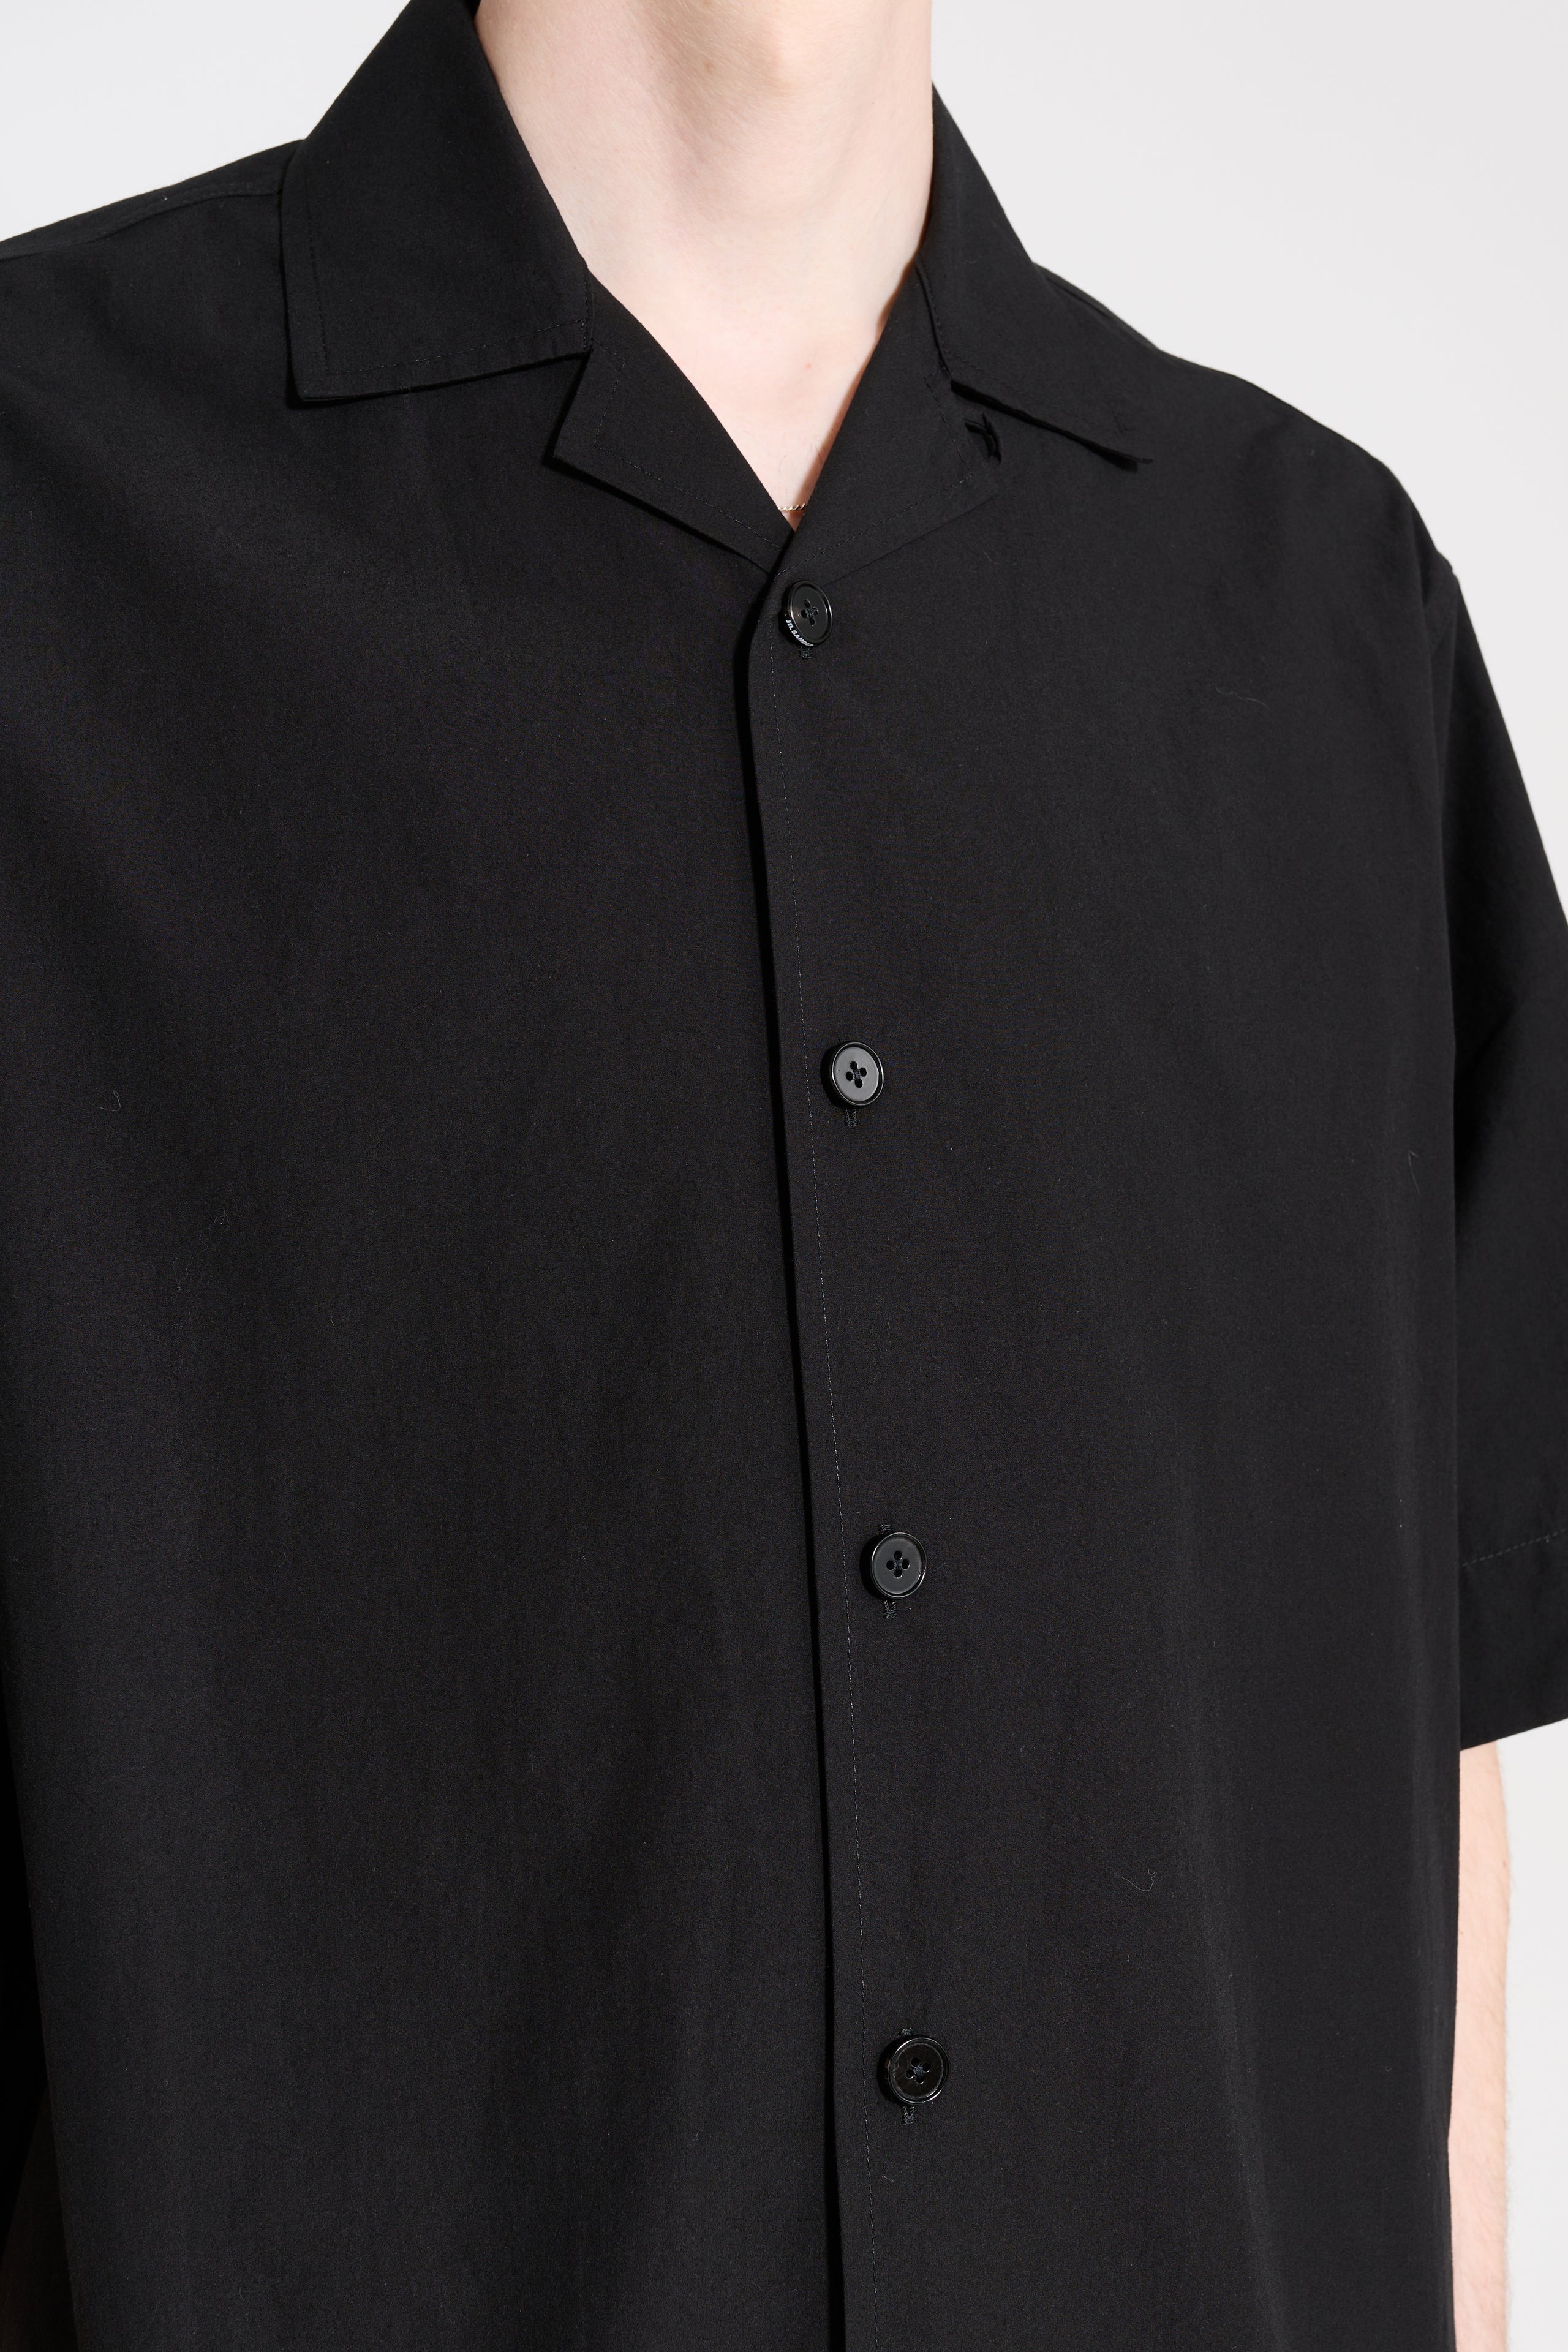 Jil Sander+ Short Sleeve Shirt Black